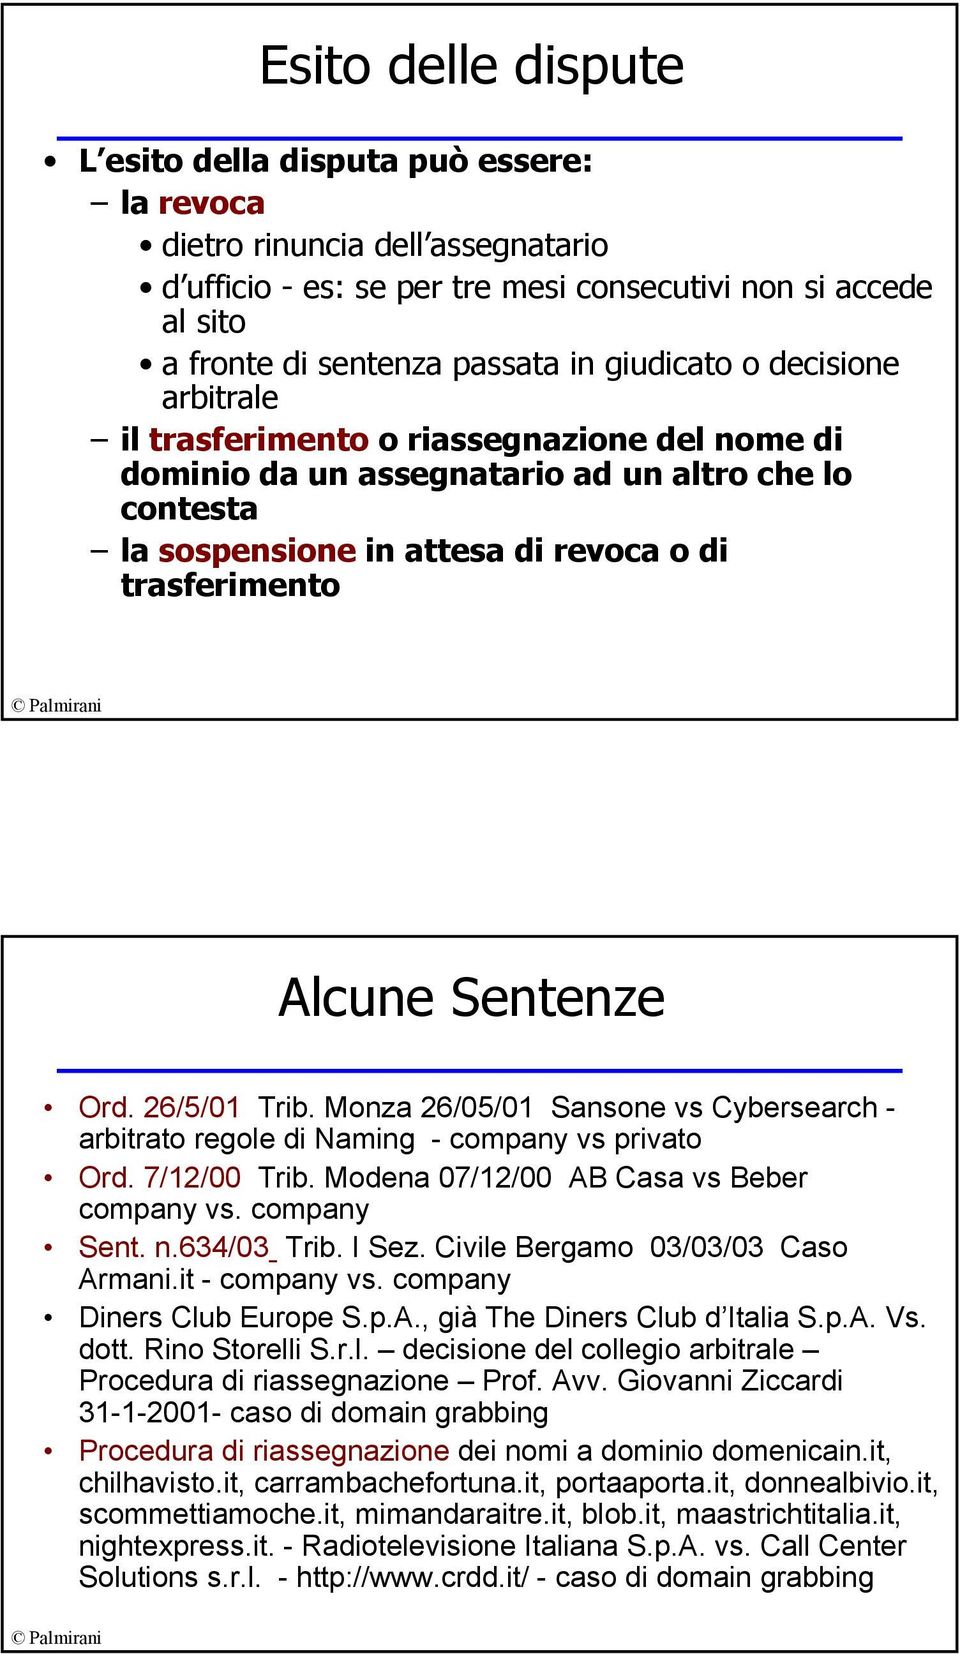 Sentenze Ord. 26/5/01 Trib. Monza 26/05/01 Sansone vs Cybersearch - arbitrato regole di Naming - company vs privato Ord. 7/12/00 Trib. Modena 07/12/00 AB Casa vs Beber company vs. company Sent. n.